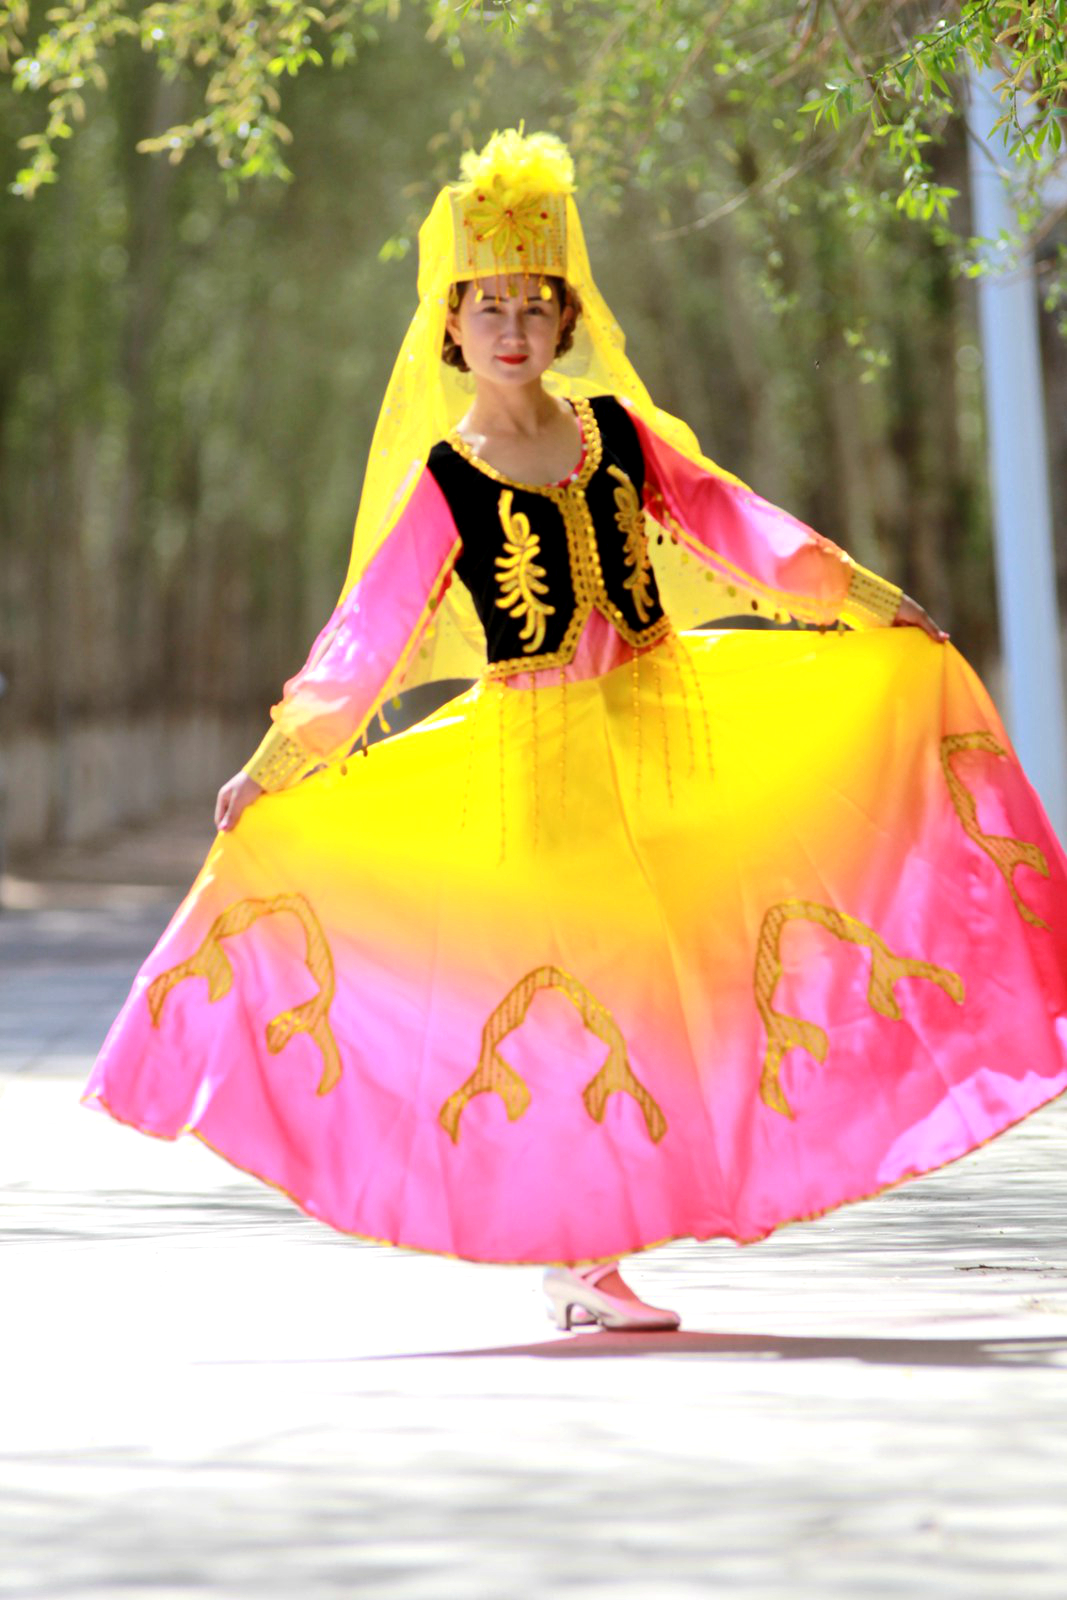 中国新疆（Xinjiang,China） 维吾尔族明星 迪丽热巴（Dilraba） 英姿飒爽性格成演艺界人气王 – 大橙传媒超科技(马来西亚)集团